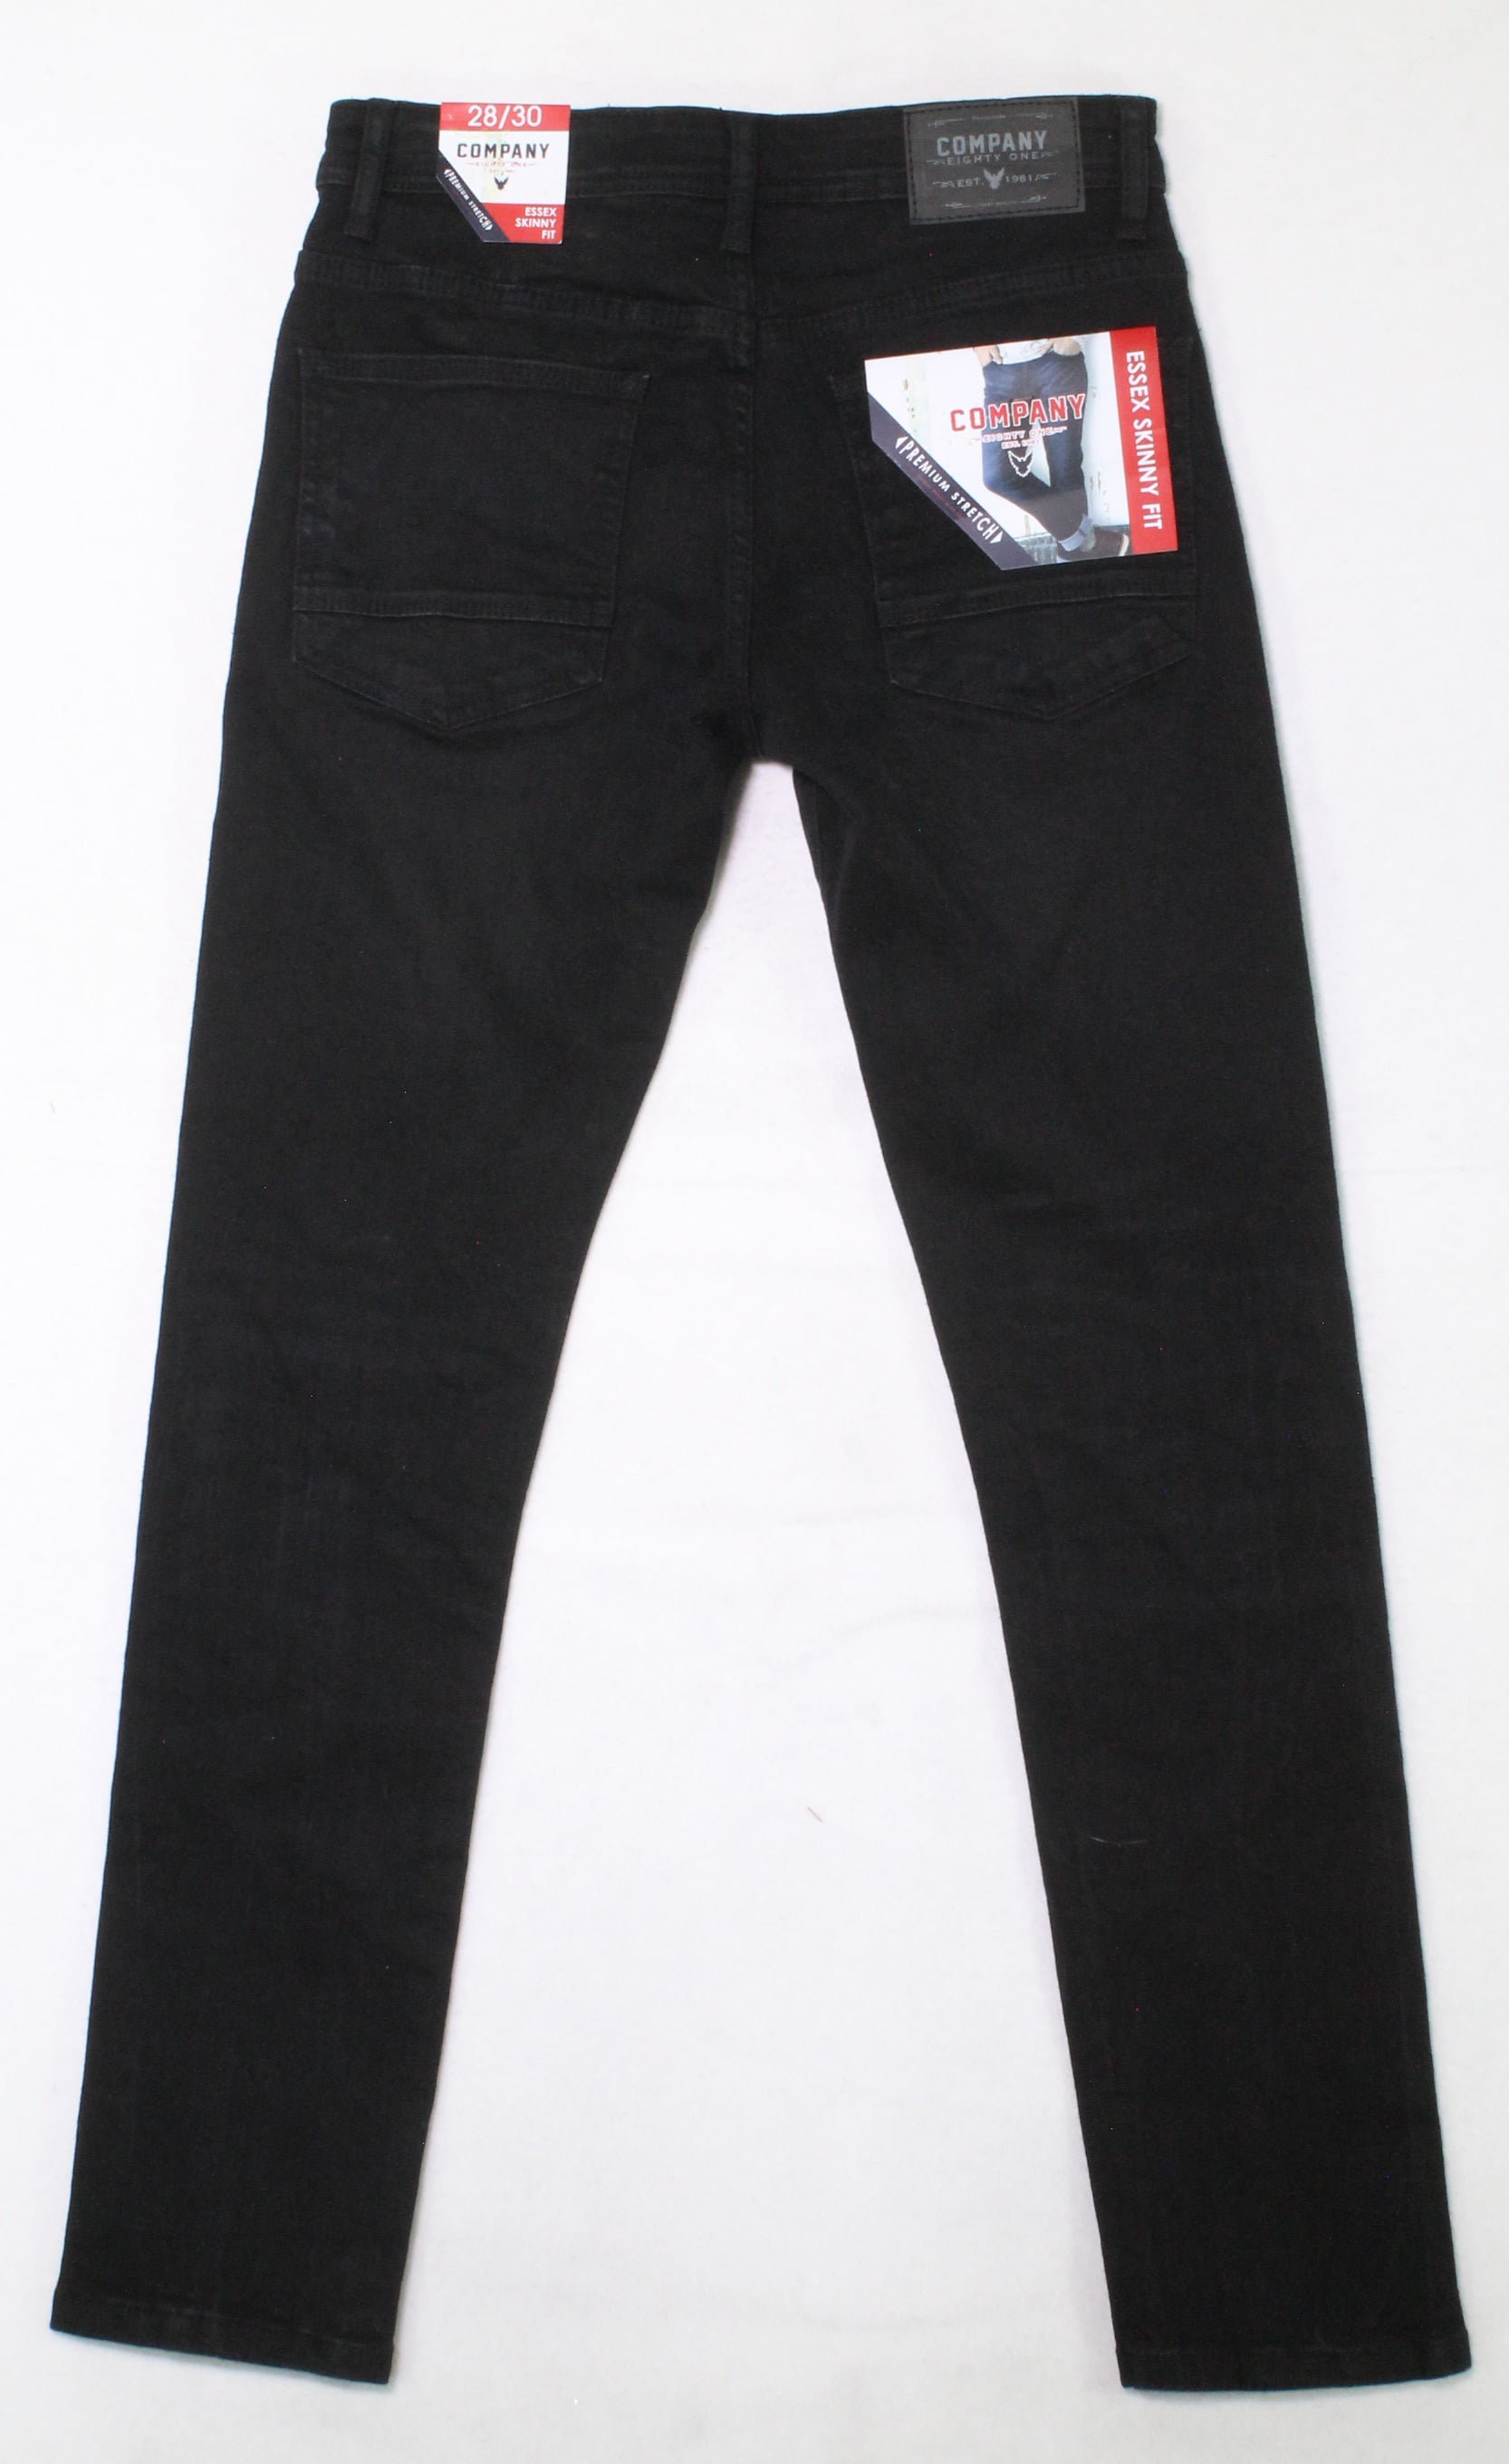 Company Eighty One Men's Essex Flex Denim Skinny Fit Jeans - Walmart.com